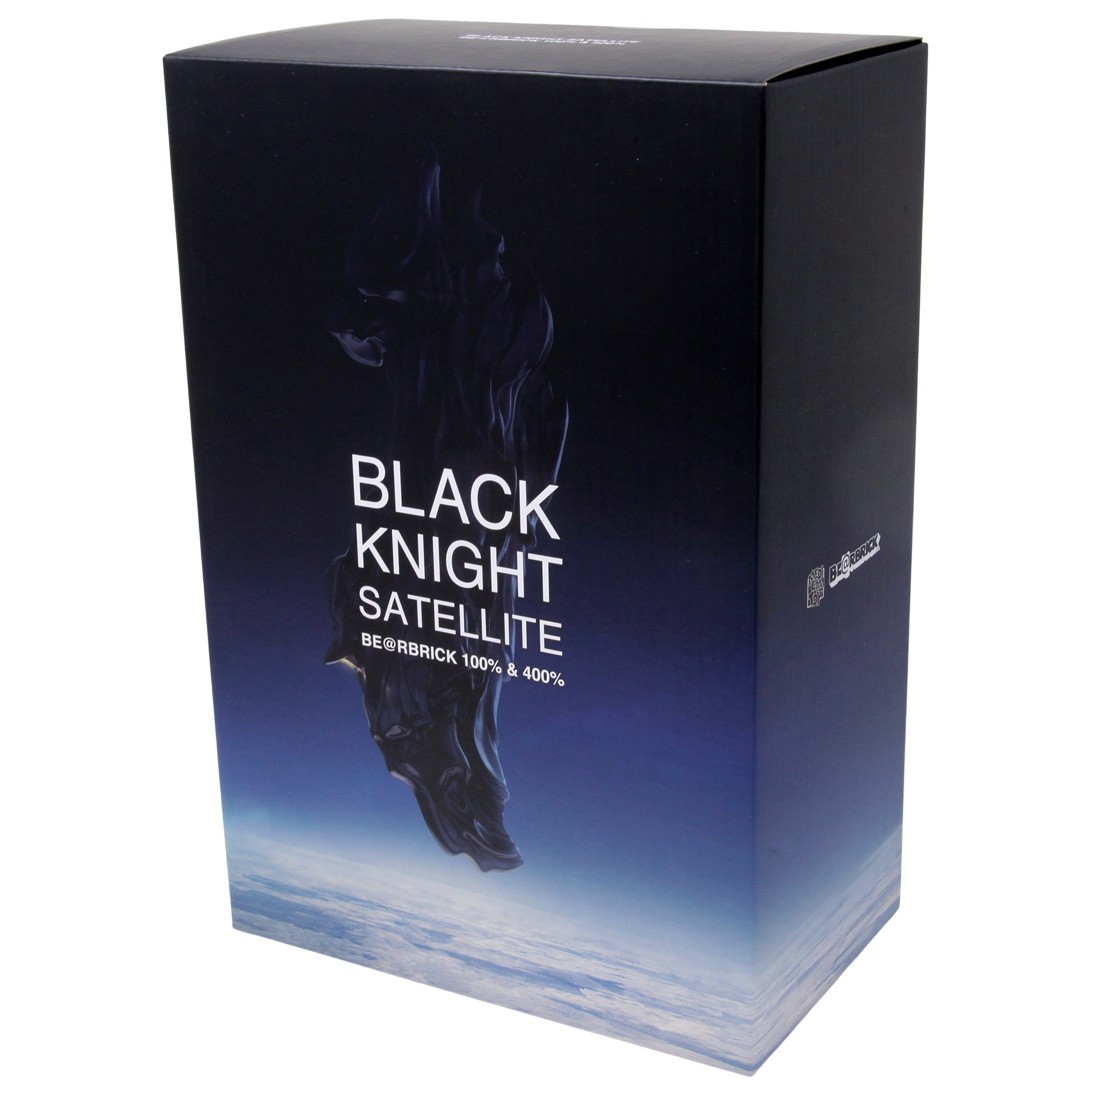 Medicom Black Knight Satellite 100% 400% Bearbrick Figure Set black